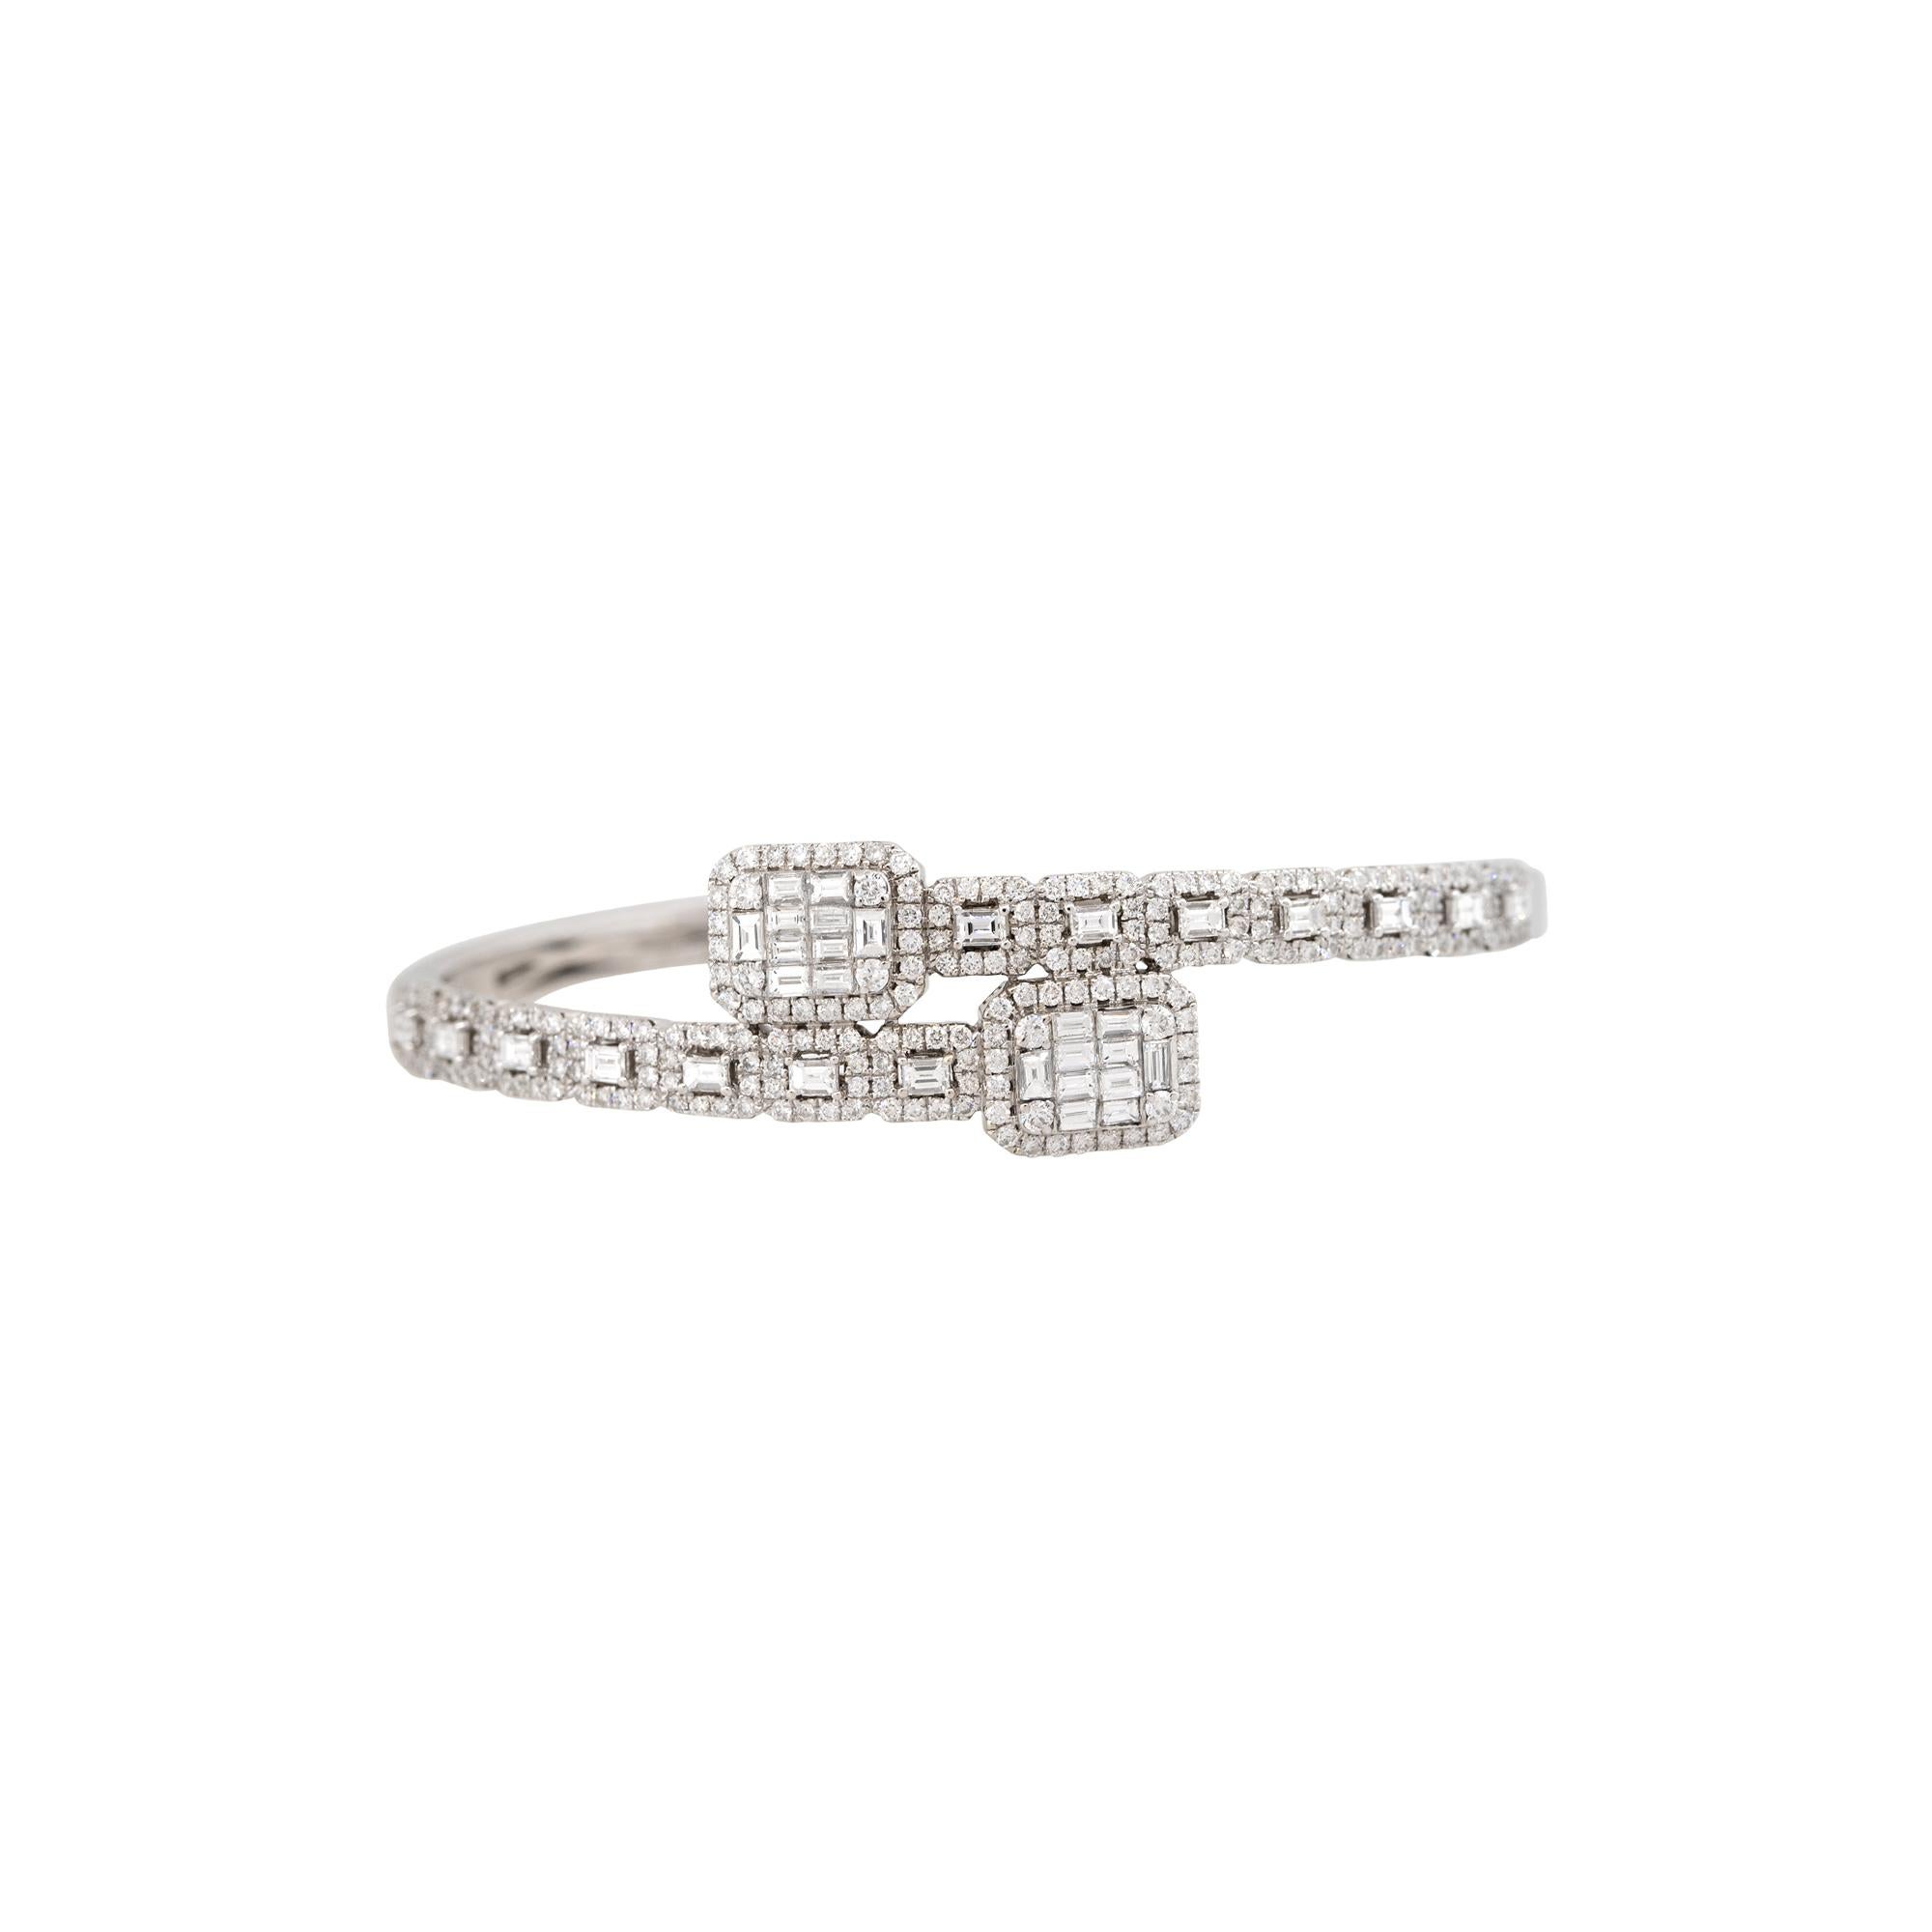 Dieses diamantene Bypass-Armband sollte sich jeder ansehen! Mit ca. 4,05 Karat Diamanten im runden Brillant-, Baguette- und Smaragdschliff bietet dieses Armband einen coolen und trendigen Look. Es gibt nicht nur mehrere Schliffe von Diamanten,